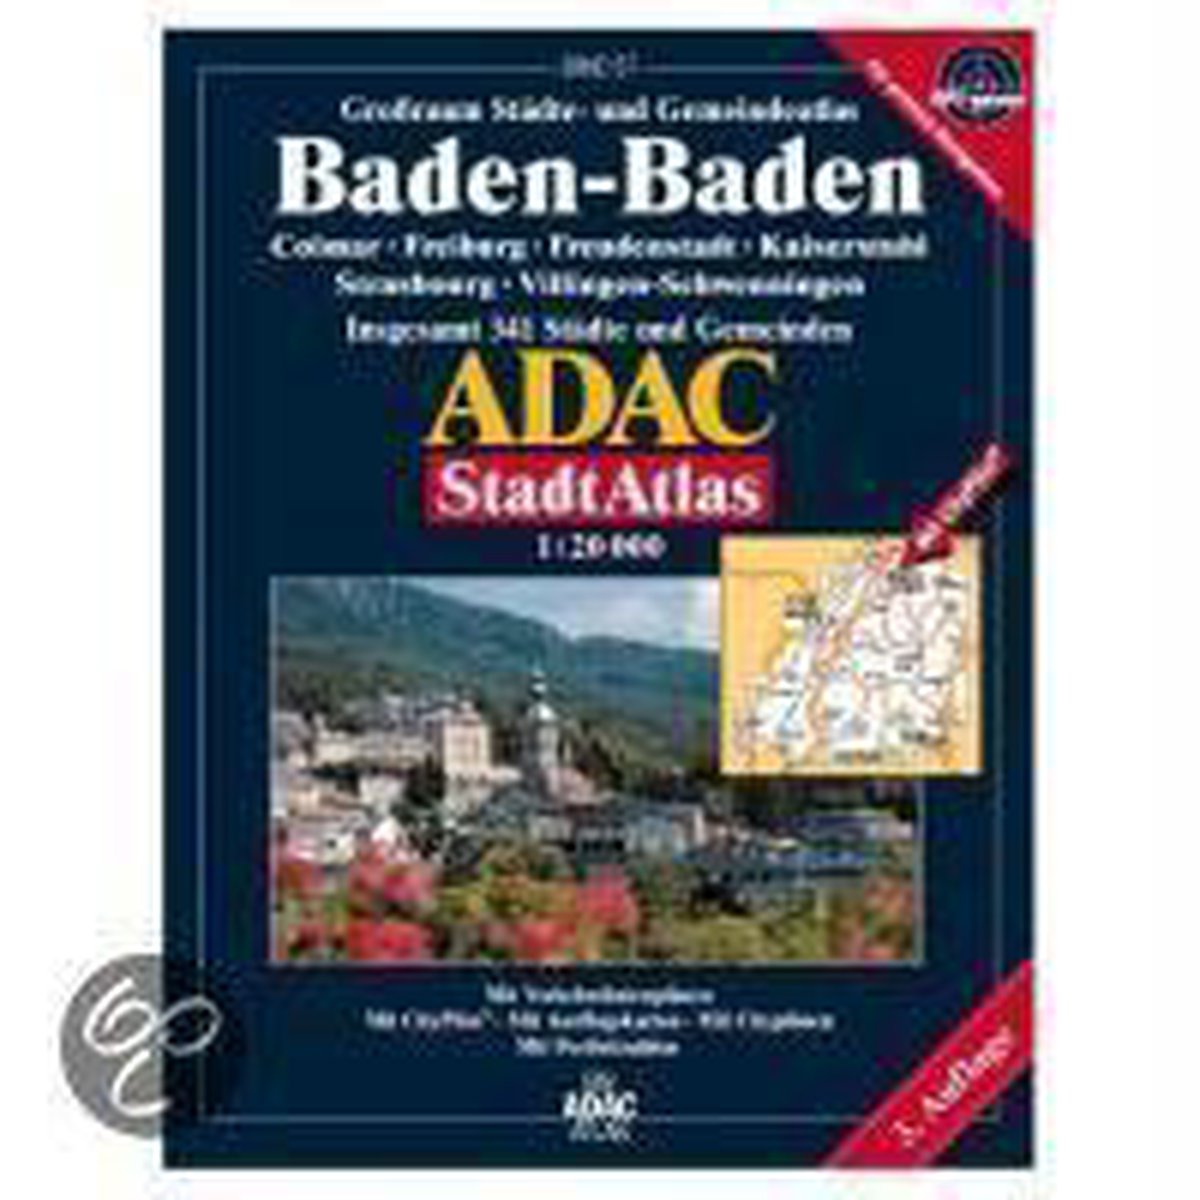 Adac Stadtatlas Baden-Baden 1 : 20 000